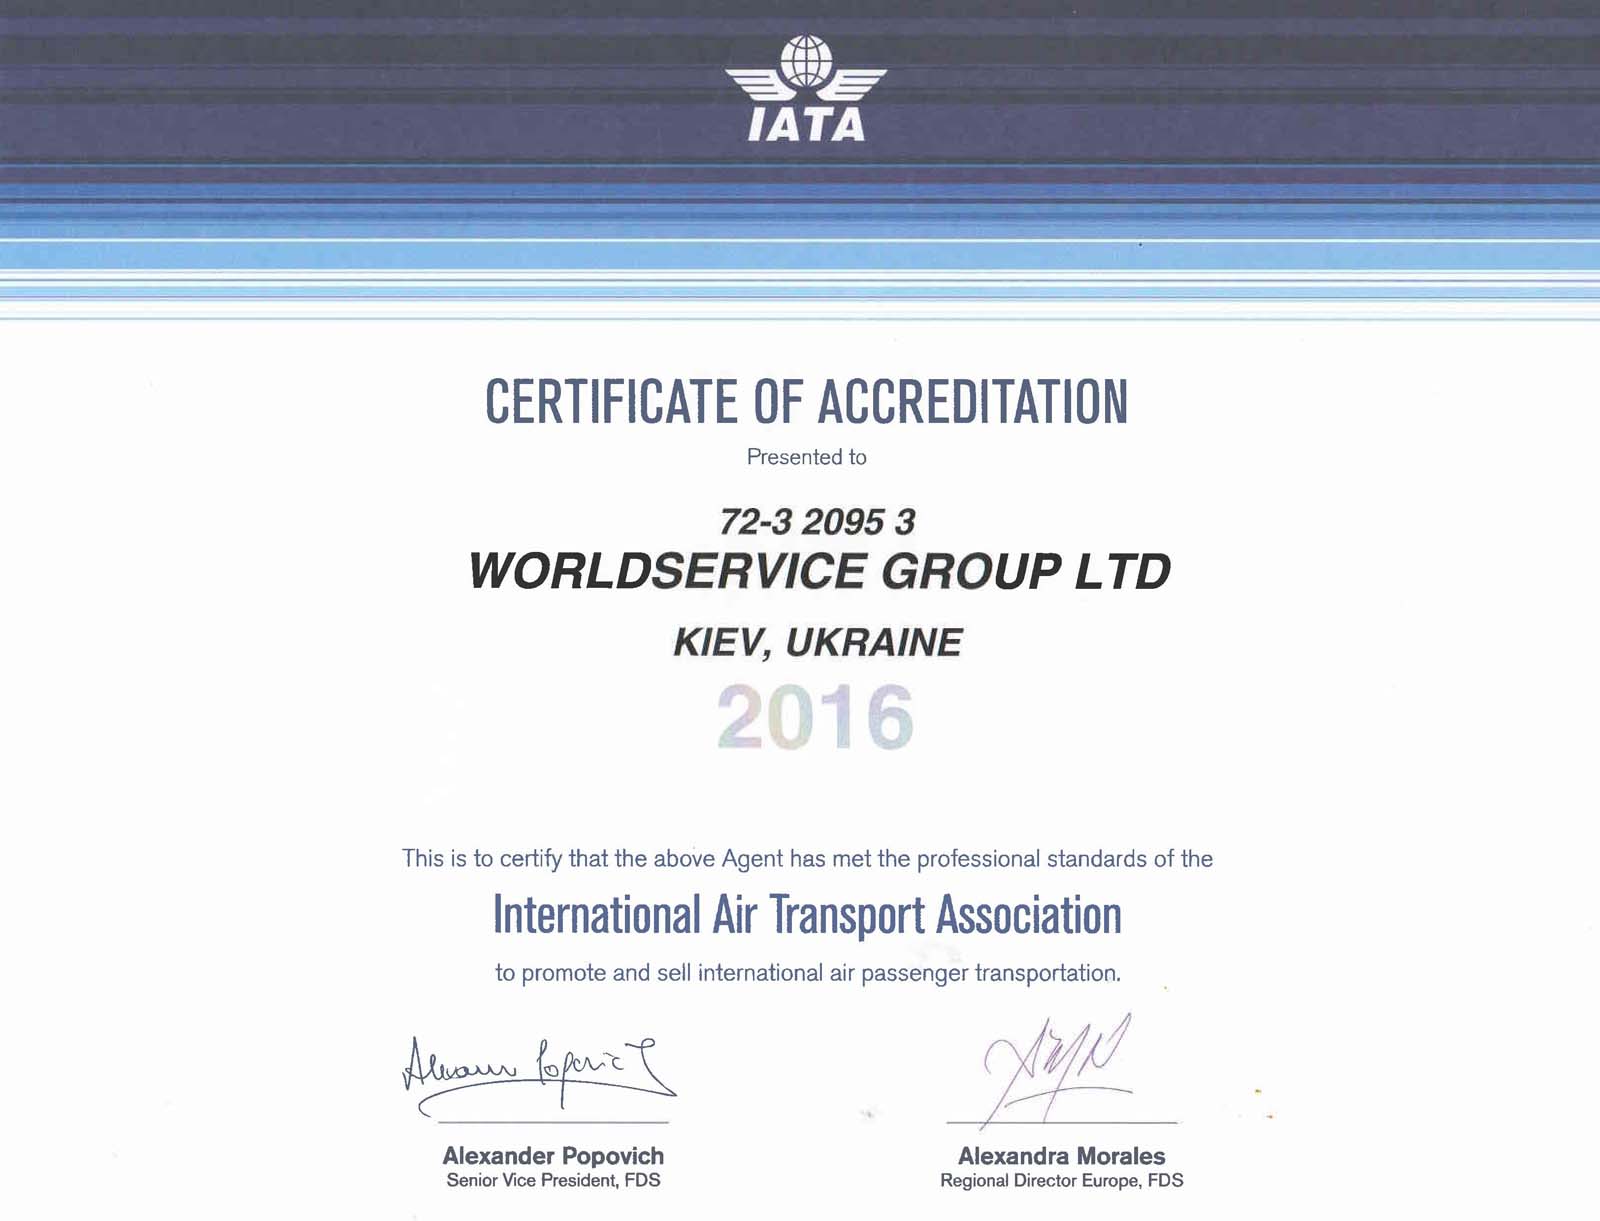 Worldservice group award